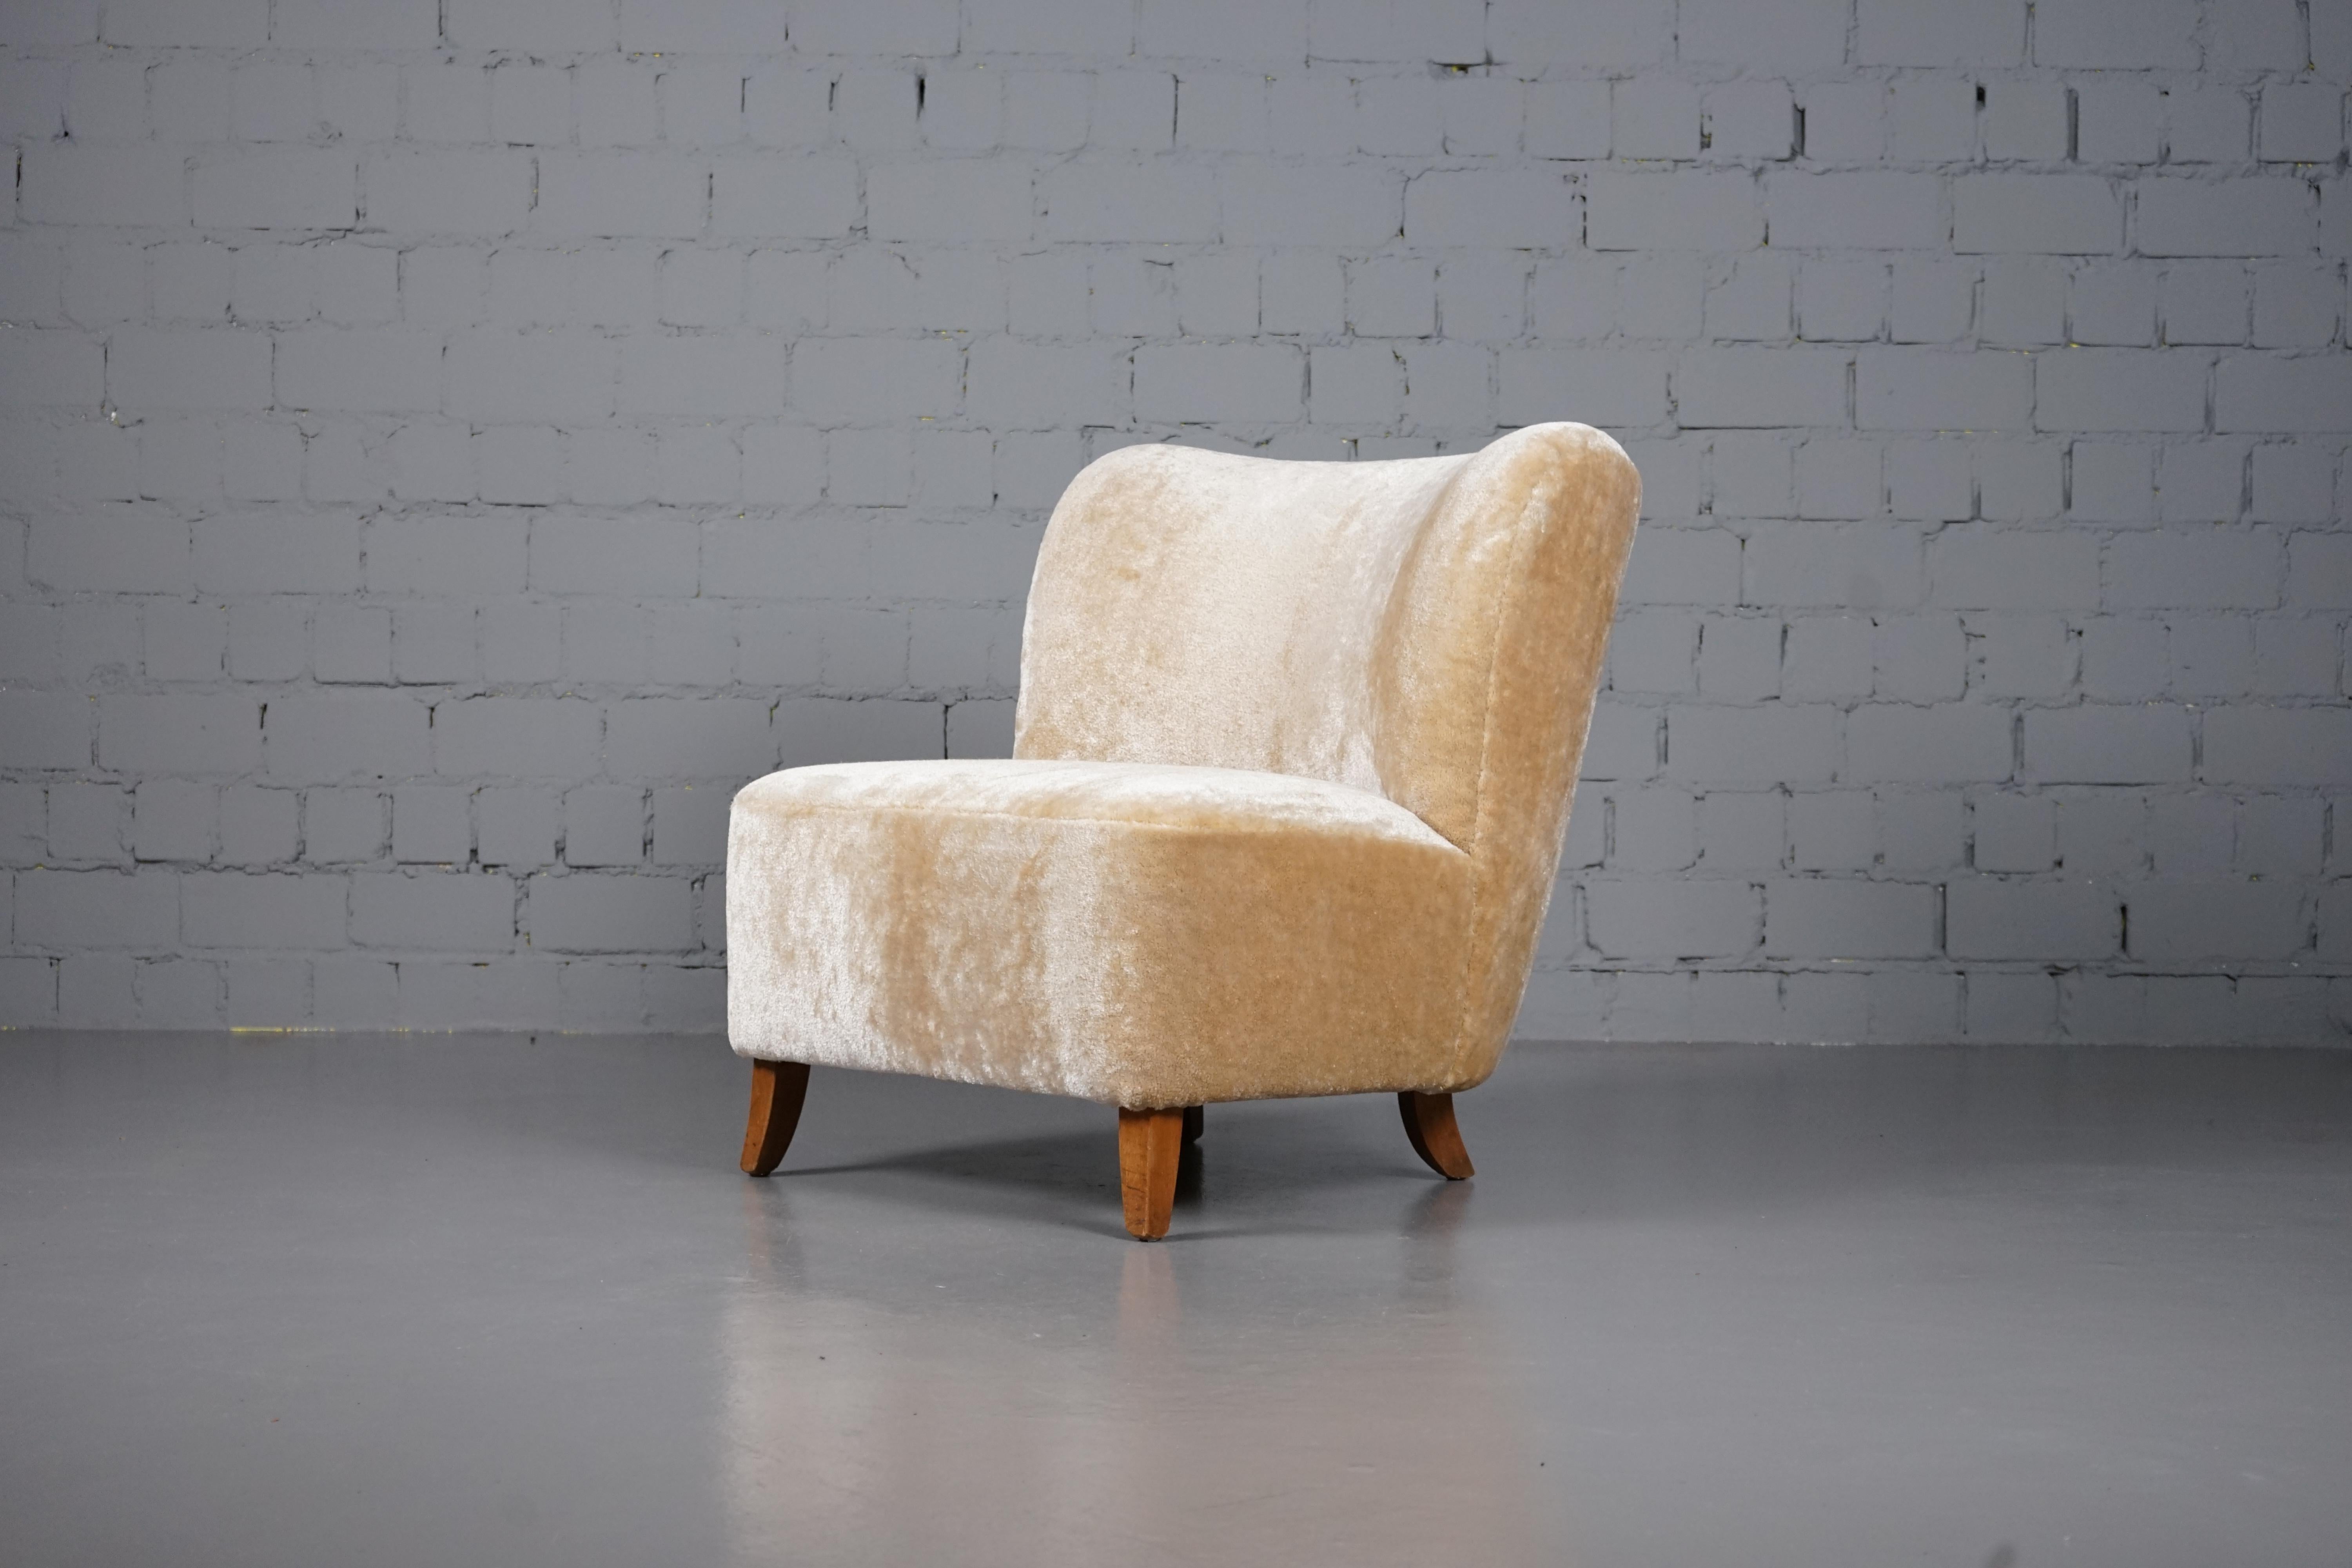  Erstaunlicher skandinavischer Sessel mit hochflorigem Samtstoff aus der goldenen Mid-Century Modern-Ära.
Der Sessel stammt aus dem Nachlass eines Architekten und wurde von seinem Besitzer geliebt. Wir haben ihm neues Leben eingehaucht, indem wir